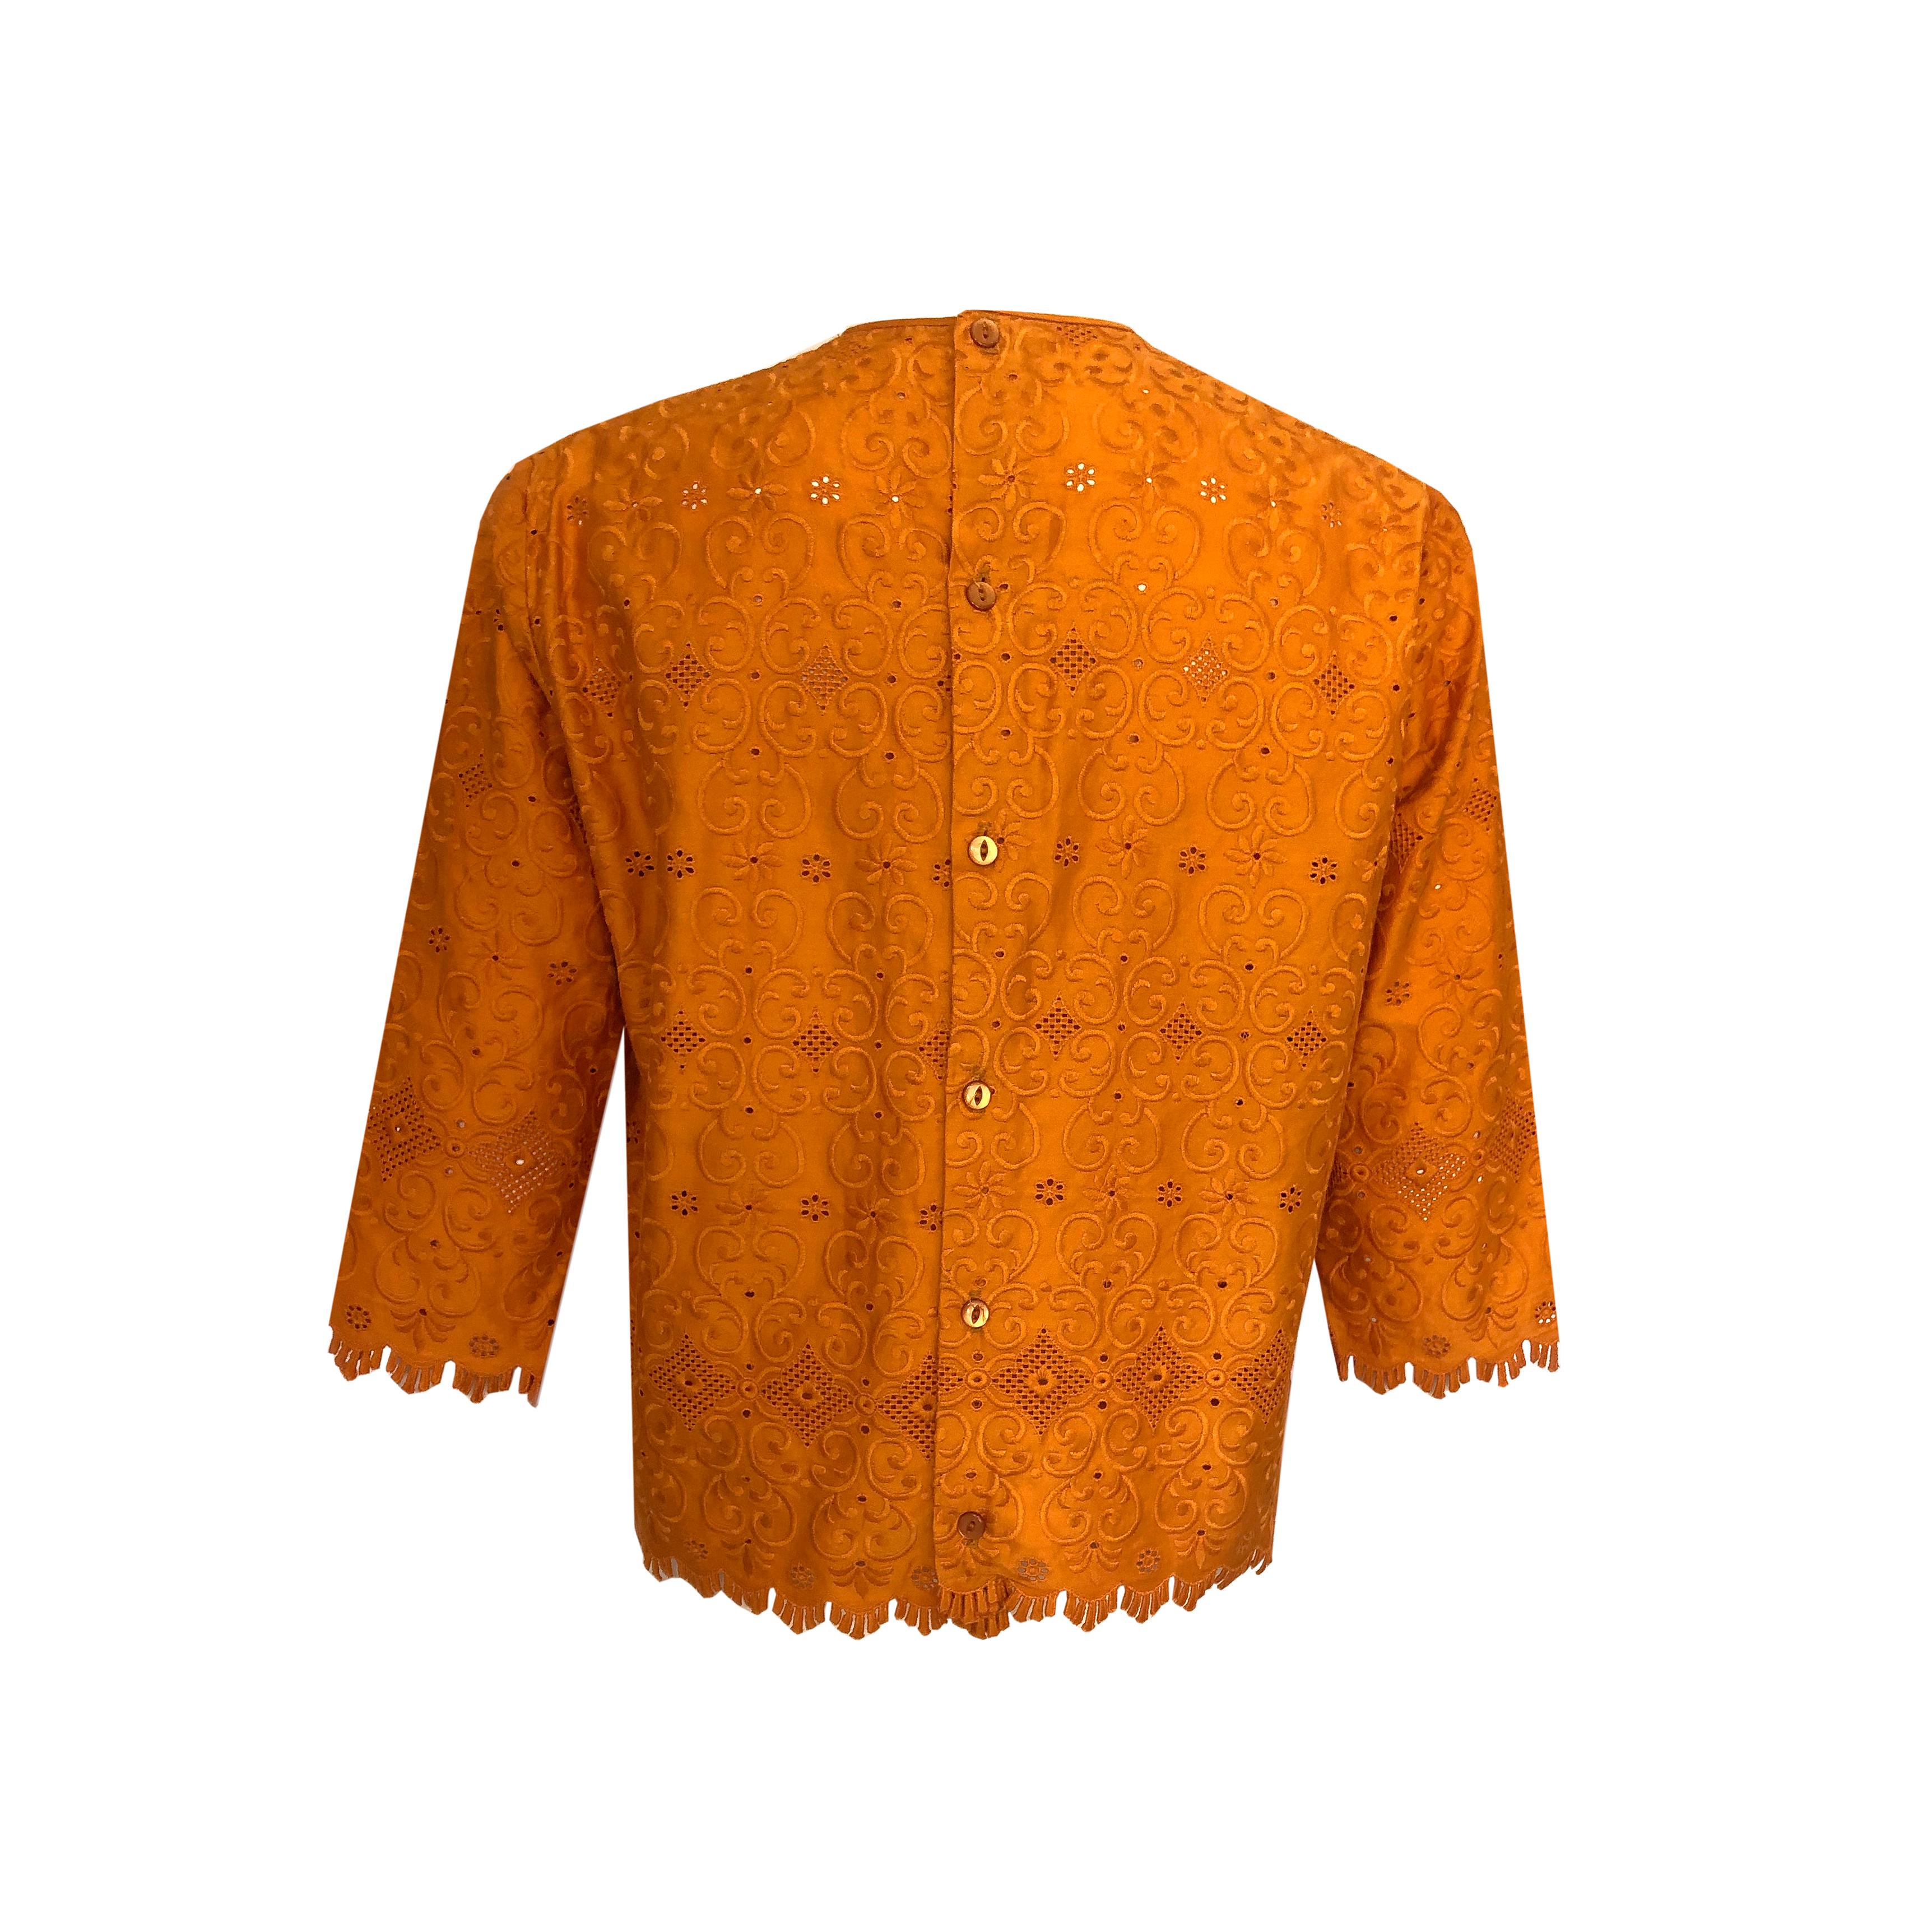 Women's 1960s Vintage - Lace Top - Burnt Orange Cotton - Intricate Cut-Out Detailing